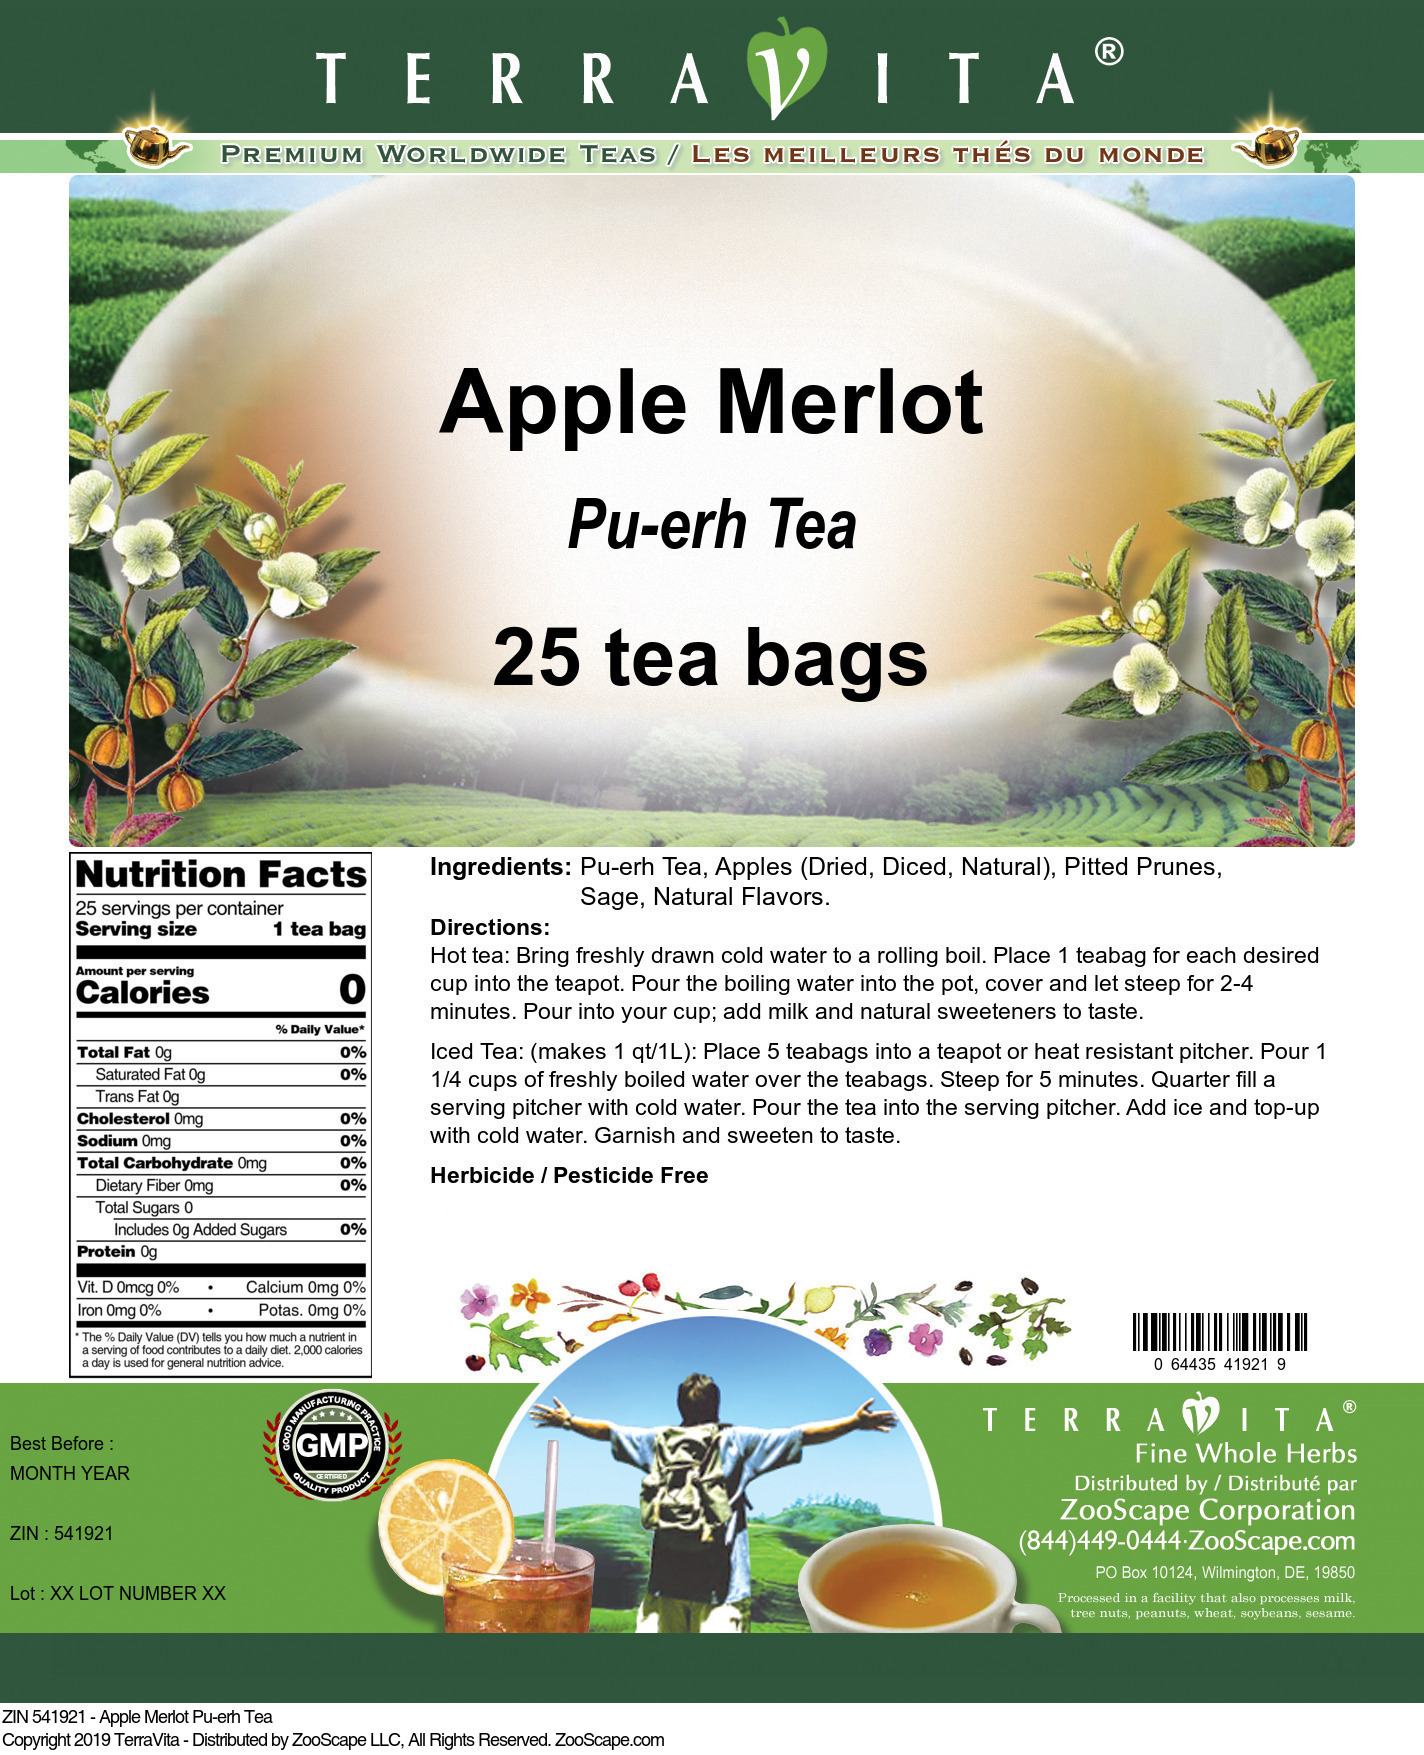 Apple Merlot Pu-erh Tea - Label